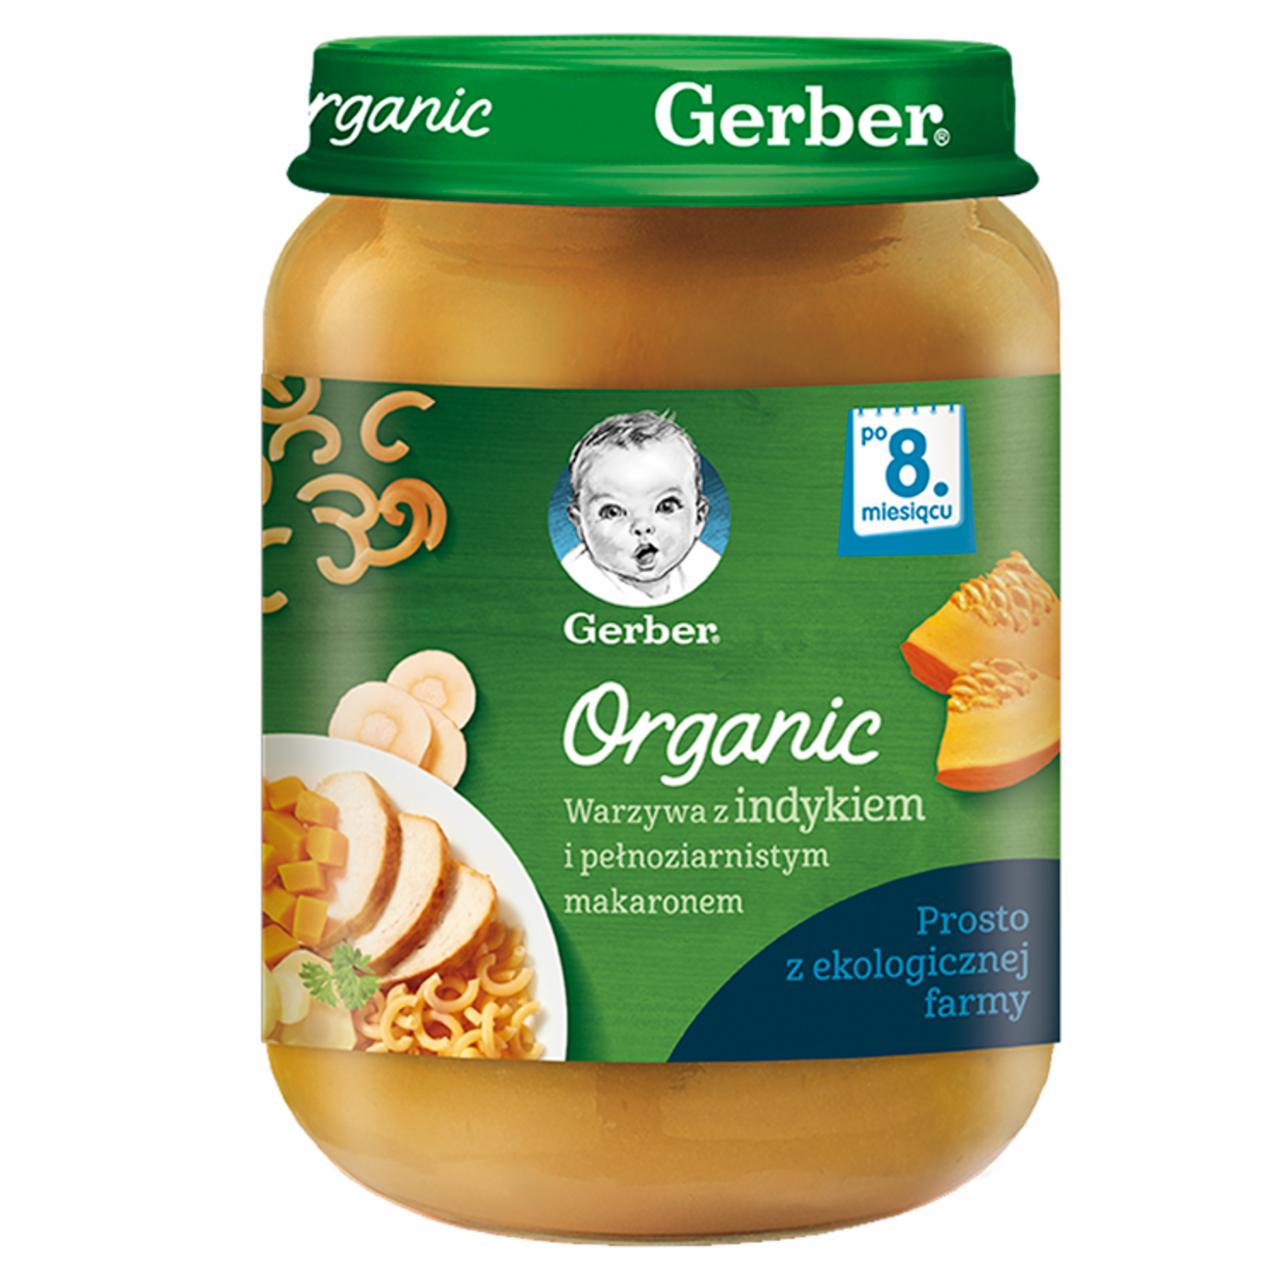 Zdjęcia - Gerber Organic Warzywa z indykiem i pełnoziarnistym makaronem dla niemowląt po 8. miesiącu 190 g